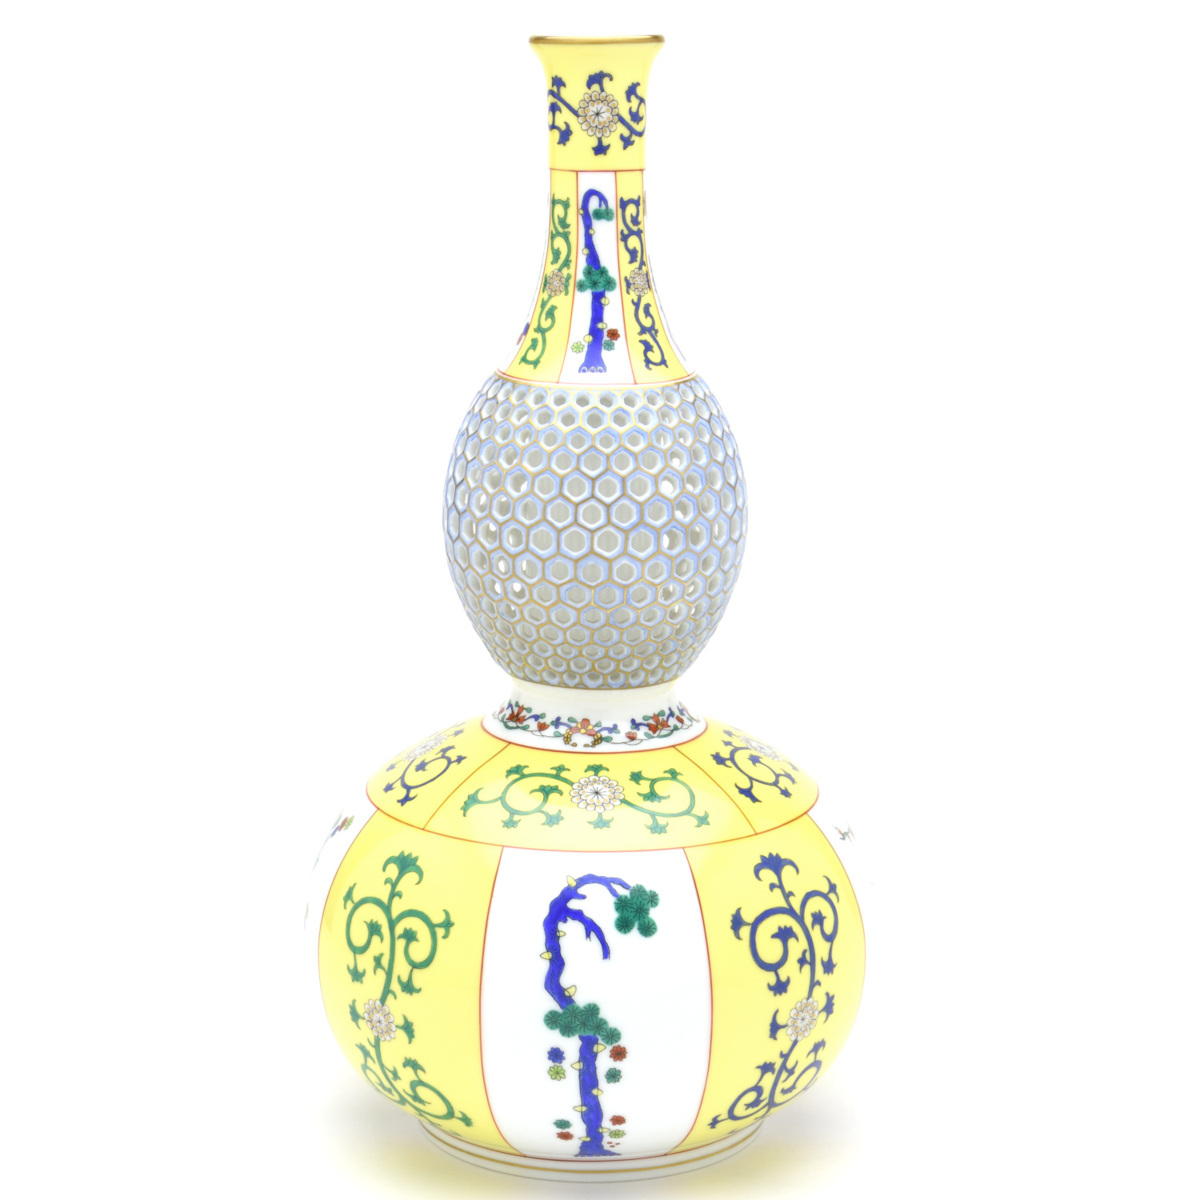 Herend Xi'an Vase en forme de gourde jaune (L) Vase décoratif en porcelaine sculptée ajourée peint à la main signé par le maître peintre Pine, Chiku, et motif prune New Herend, meubles, intérieur, accessoires d'intérieur, vase